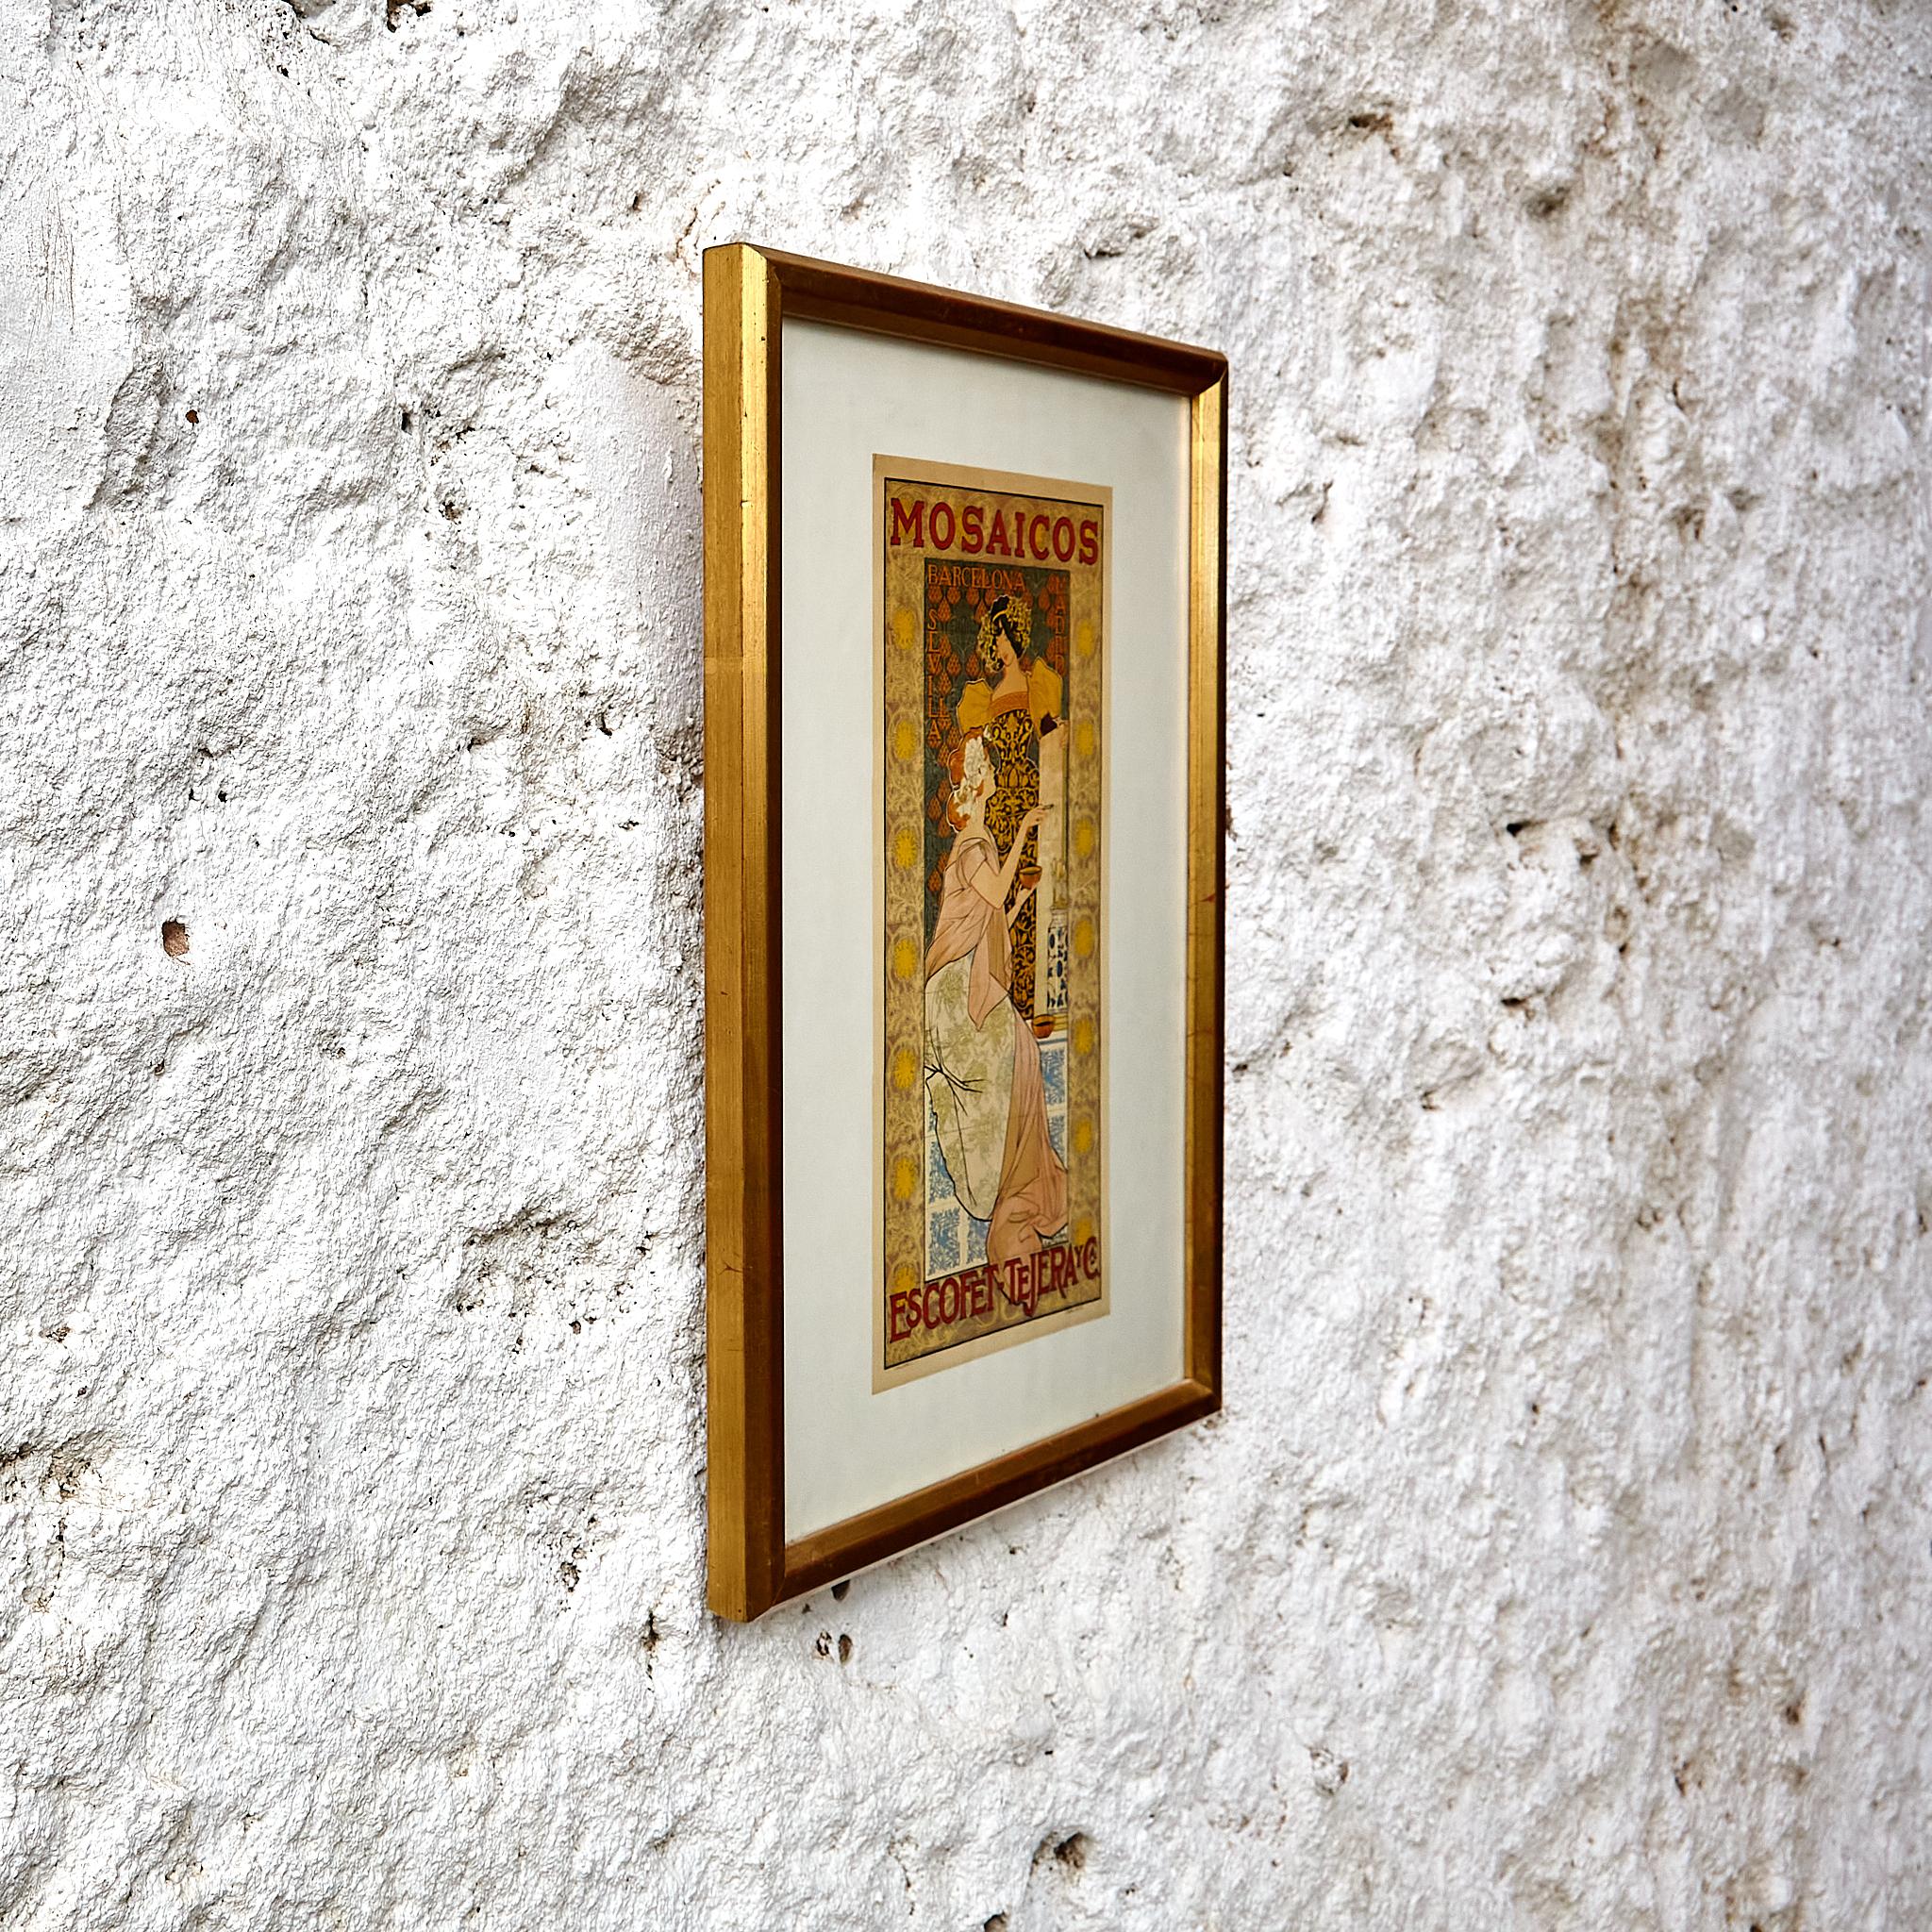 Gerahmter Ricover-Druck von „Mosaicos Escofet“, um 1900

Hergestellt in Spanien, gedruckt in Barcelona um 1900.

Abmessungen: 
T 3 x B 31 H 41 cm

Originaler Zustand mit geringen alters- und gebrauchsbedingten Abnutzungserscheinungen, der eine